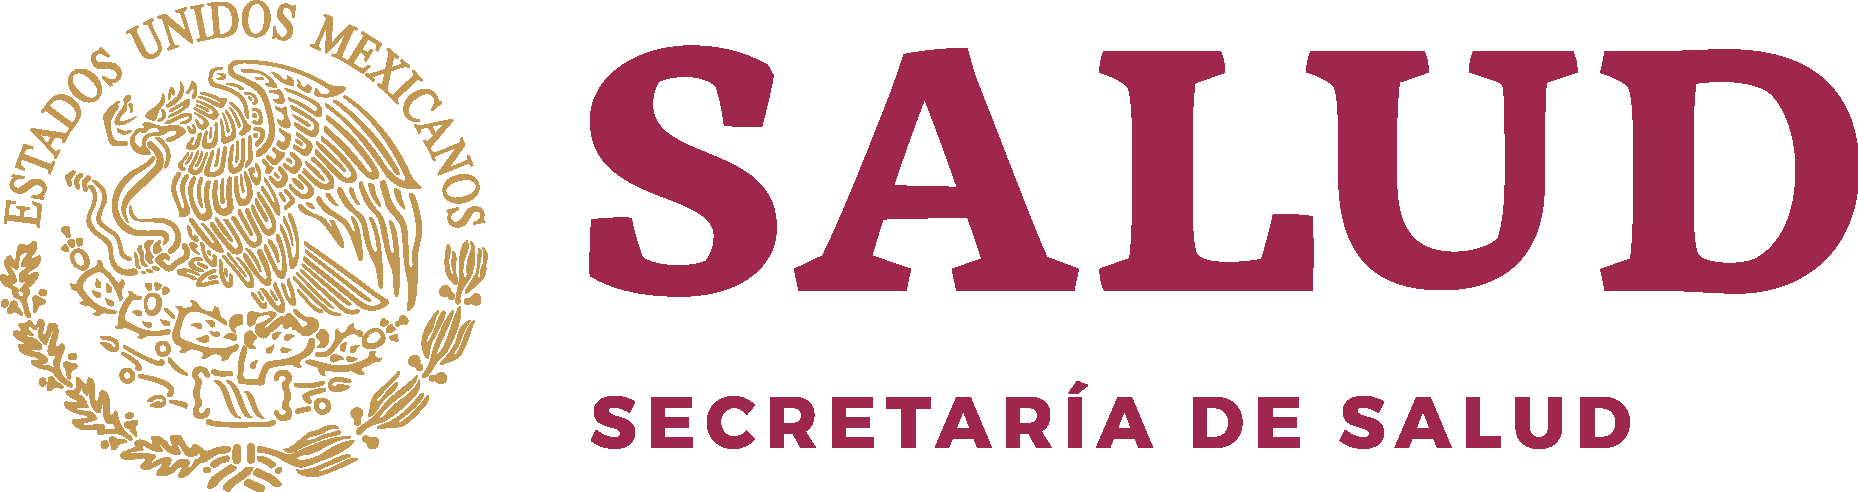 Secretaria Salud Gobierno Federal Mexico 2020 Logo Vector Ai Png Svg Eps Free Download 2391